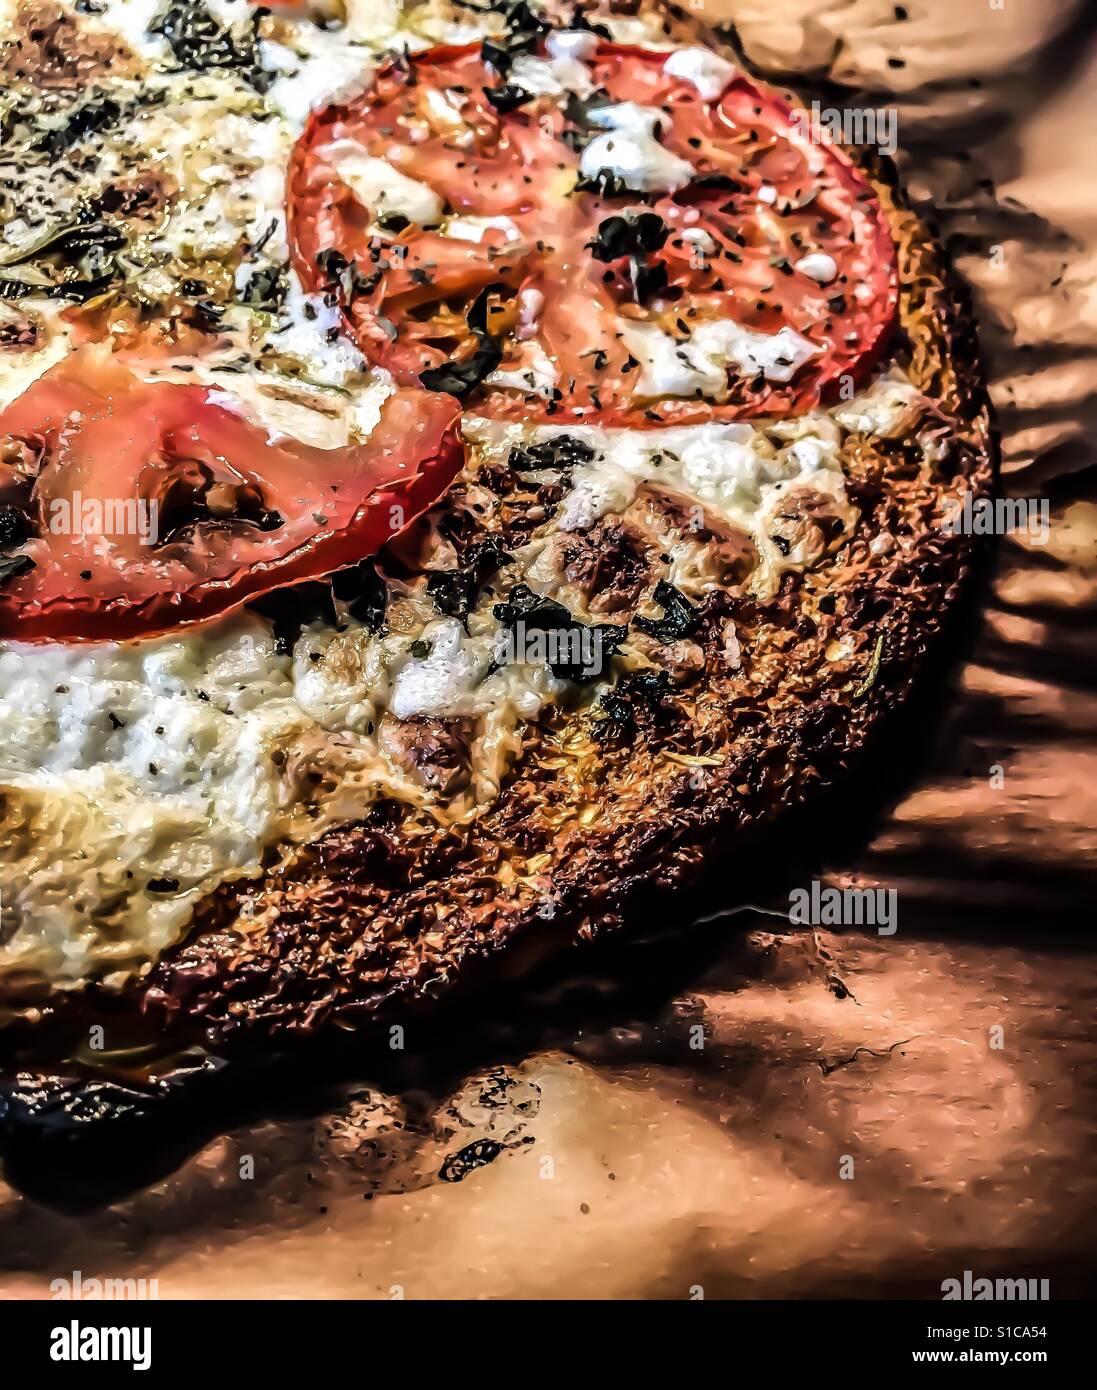 Cauliflower crust pizza Stock Photo